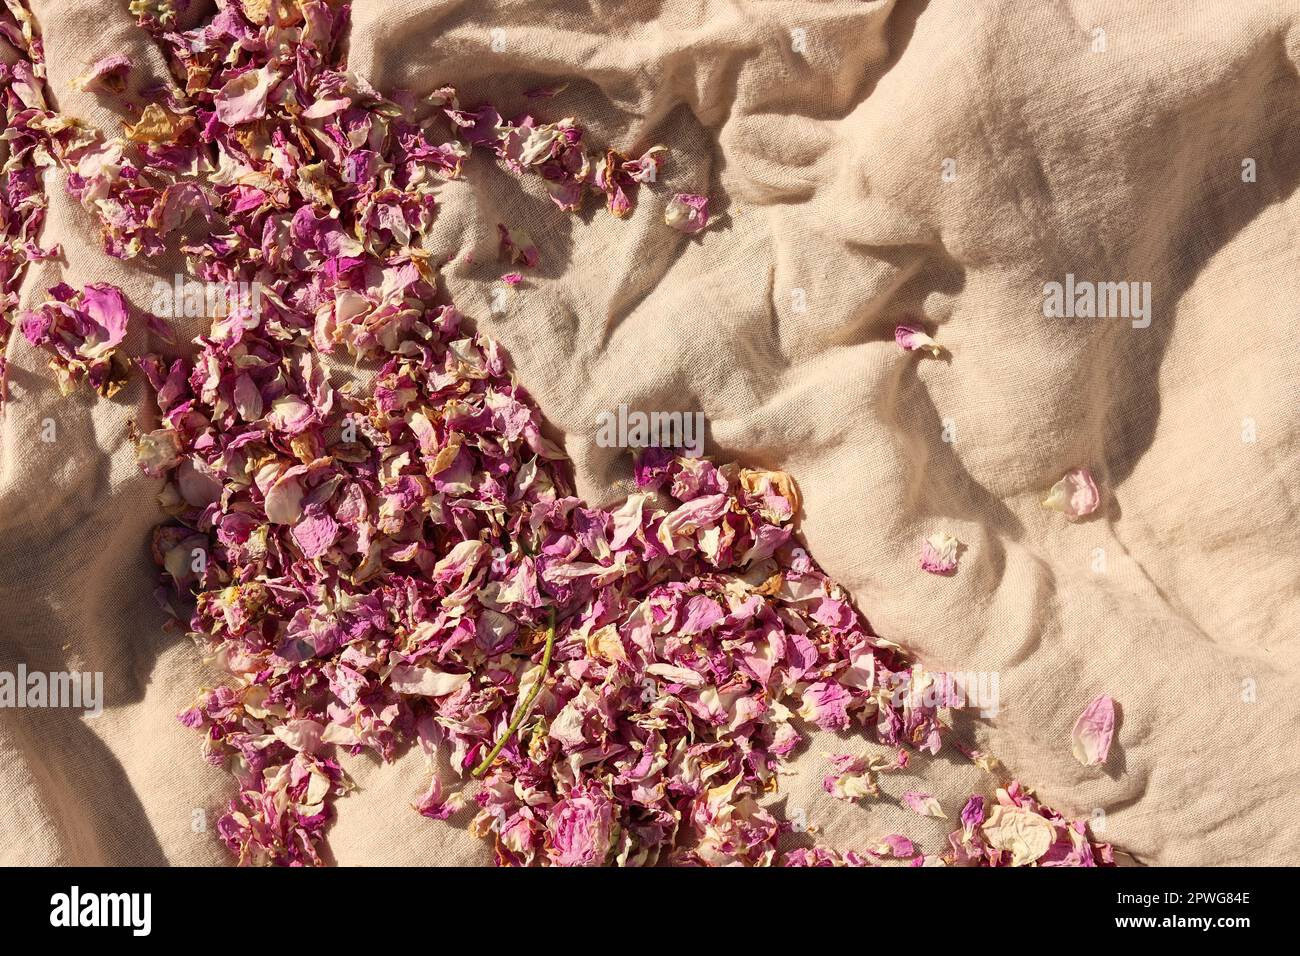 Immagini Stock - Una Vista Dall'alto Di Petali Di Rosa Essiccati